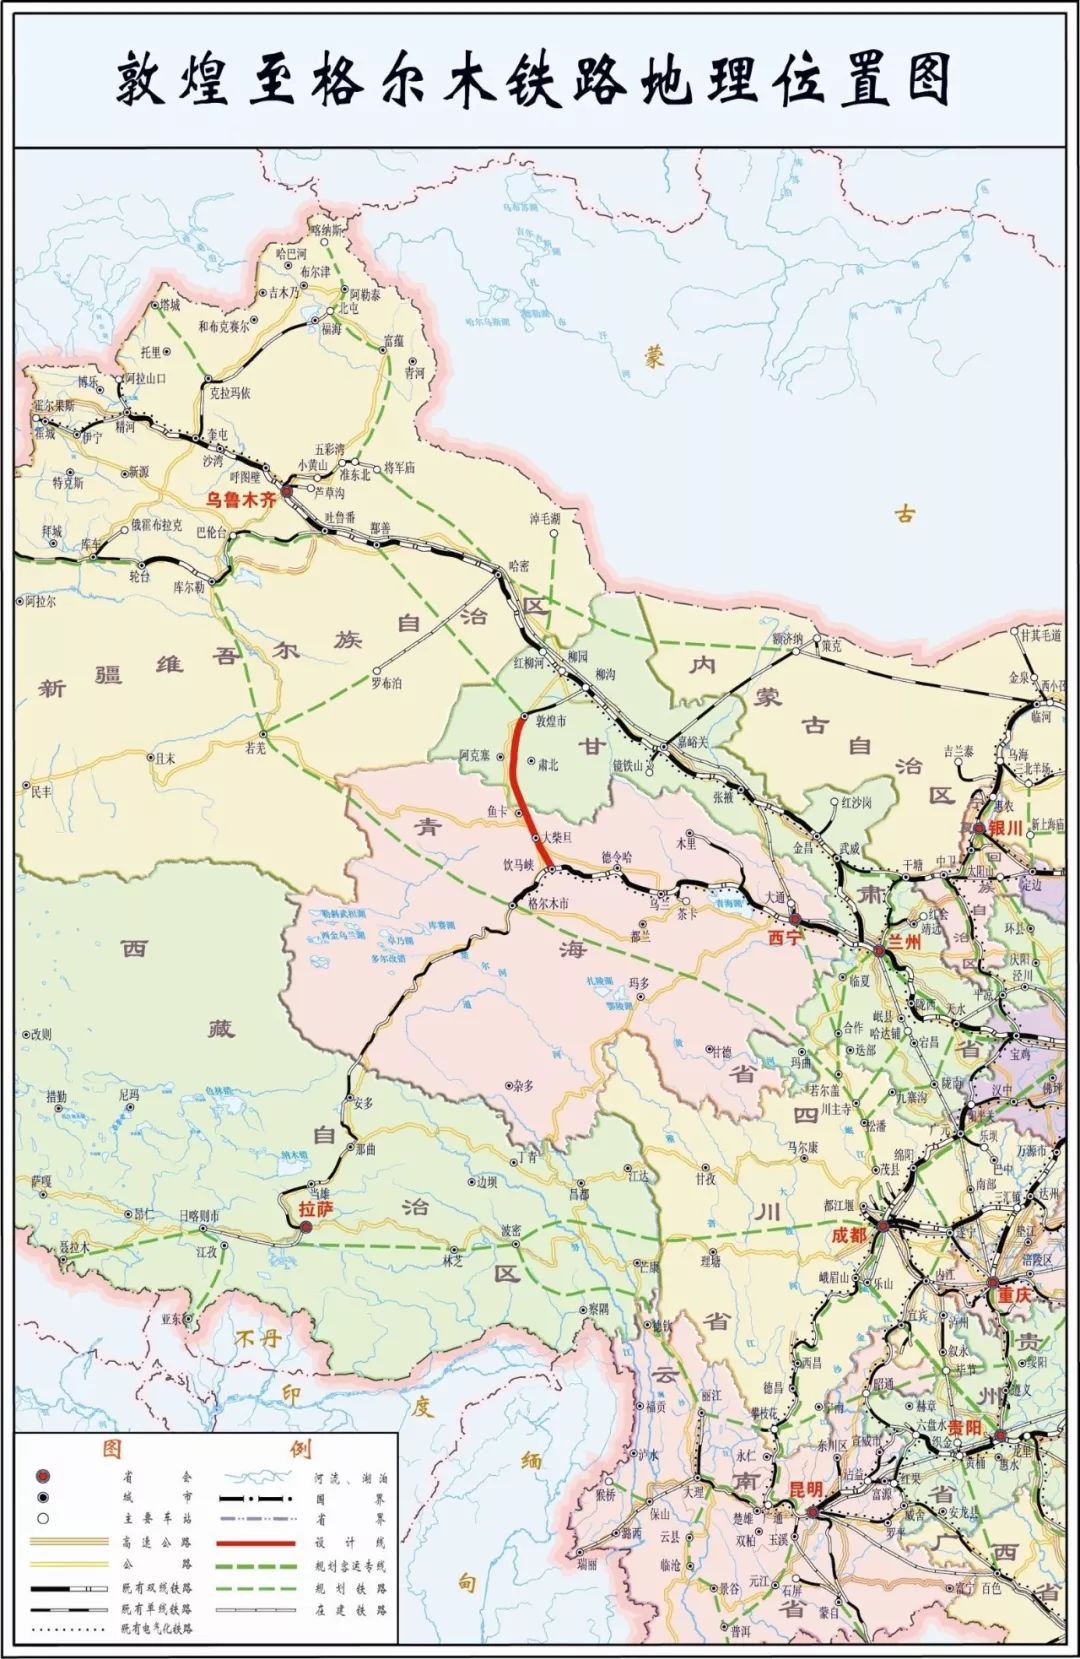 敦煌铁路全线开通运营,西北首条铁路环网形成